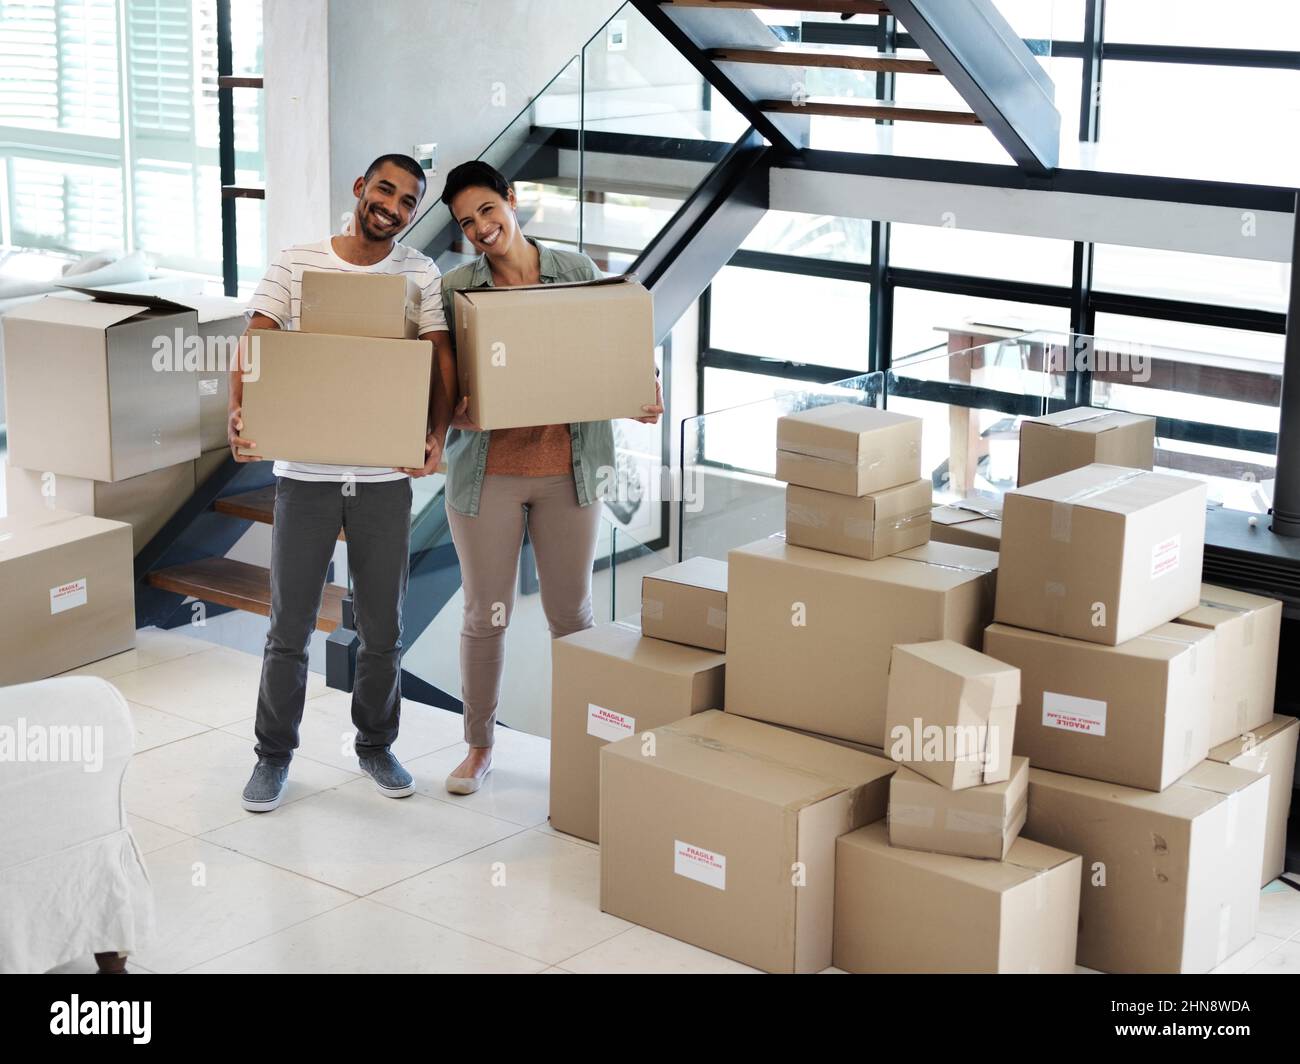 Commencer une nouvelle vie ensemble dans une nouvelle maison. Portrait d'un jeune couple heureux transportant des boîtes tout en se déplaçant dans leur nouvelle maison. Banque D'Images